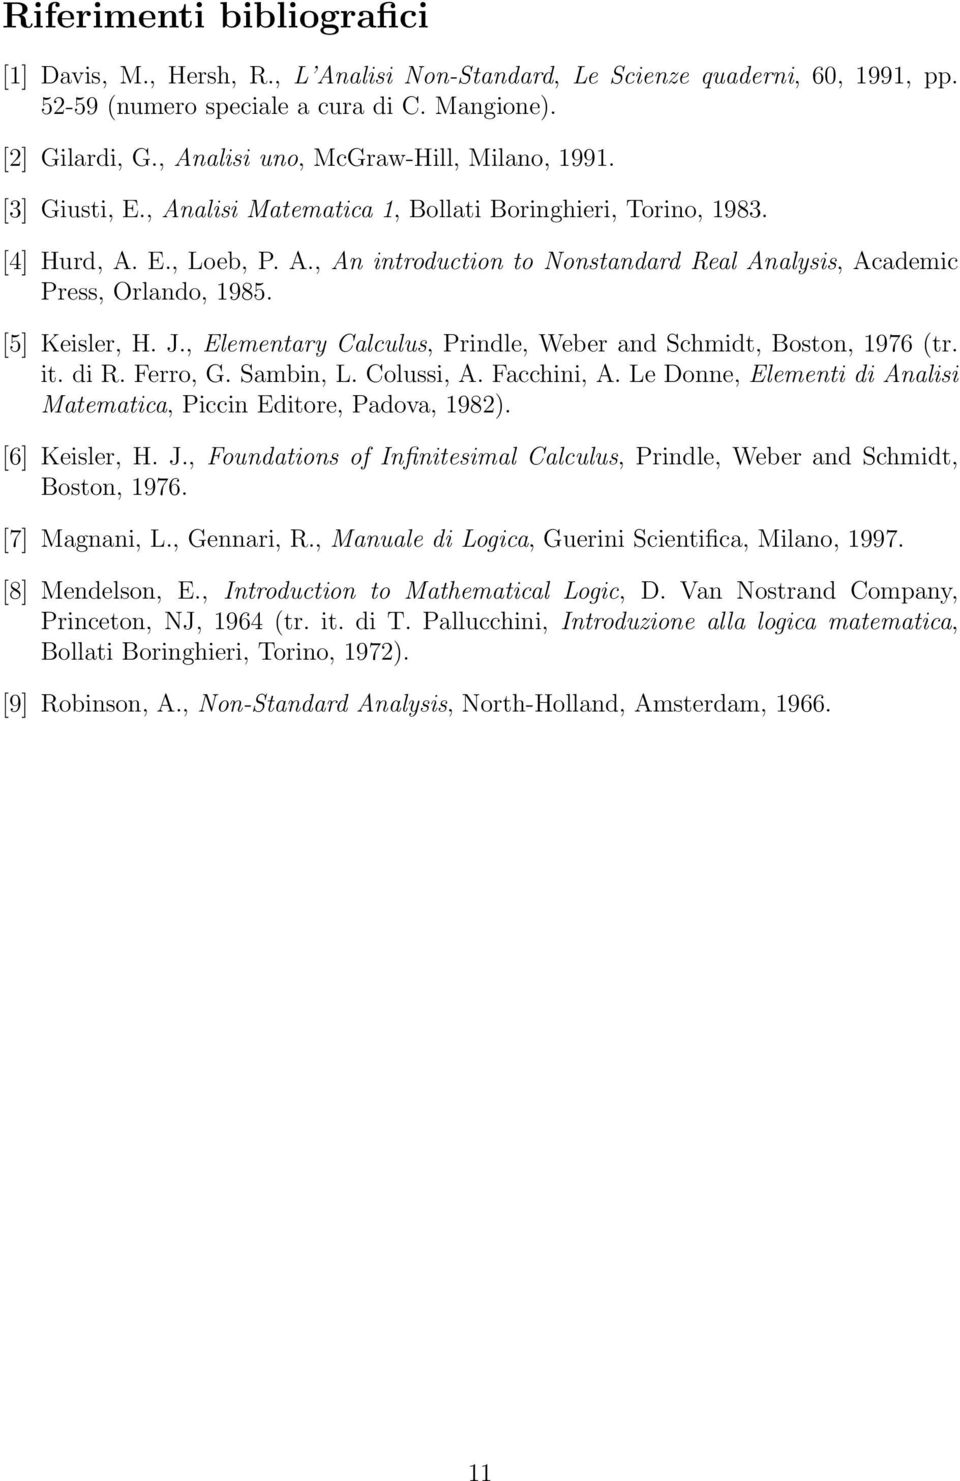 [5] Keisler, H. J., Elementary Calculus, Prindle, Weber and Schmidt, Boston, 1976 (tr. it. di R. Ferro, G. Sambin, L. Colussi, A. Facchini, A.